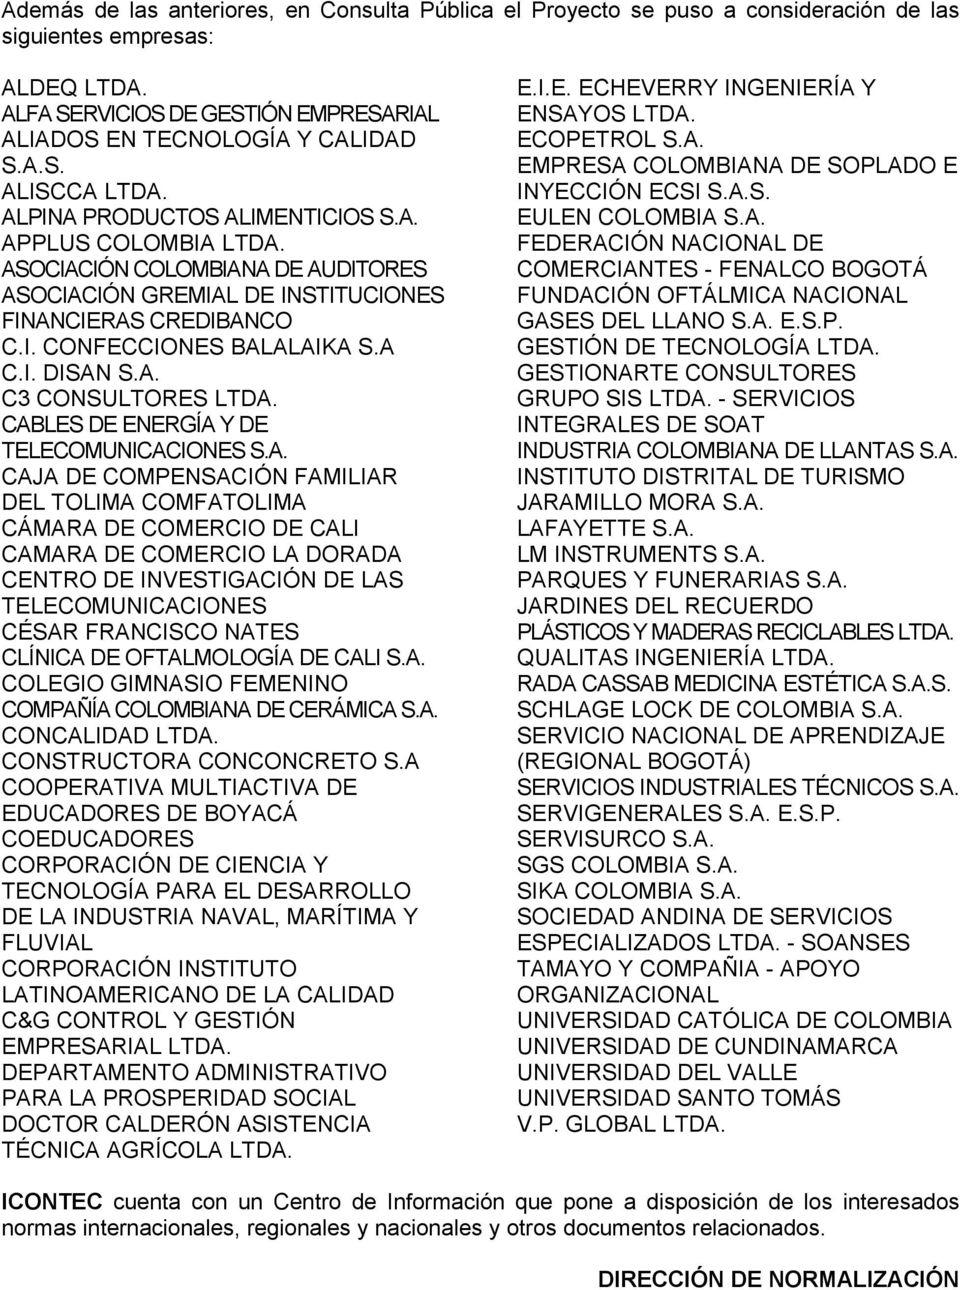 CABLES DE ENERGÍA Y DE TELECOMUNICACIONES S.A. CAJA DE COMPENSACIÓN FAMILIAR DEL TOLIMA COMFATOLIMA CÁMARA DE COMERCIO DE CALI CAMARA DE COMERCIO LA DORADA CENTRO DE INVESTIGACIÓN DE LAS